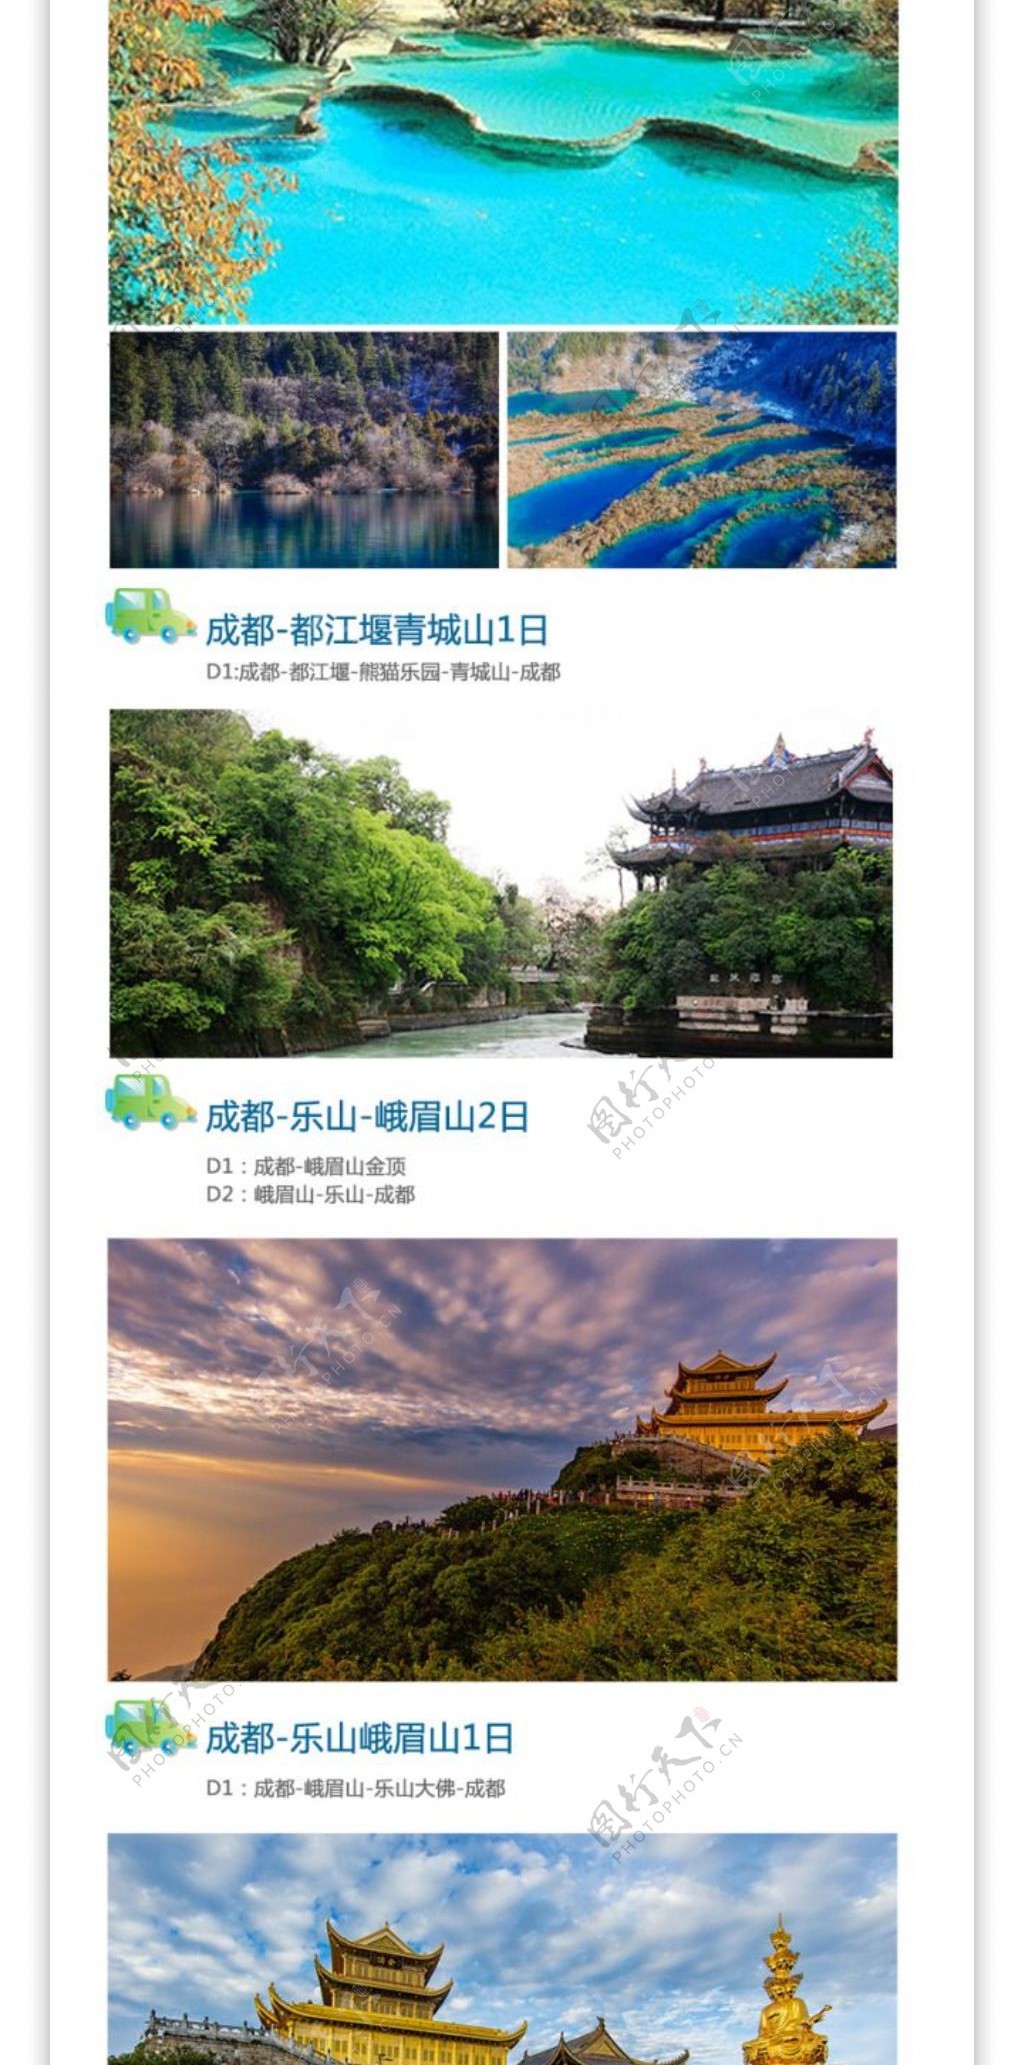 四川之旅旅游宣传海报设计